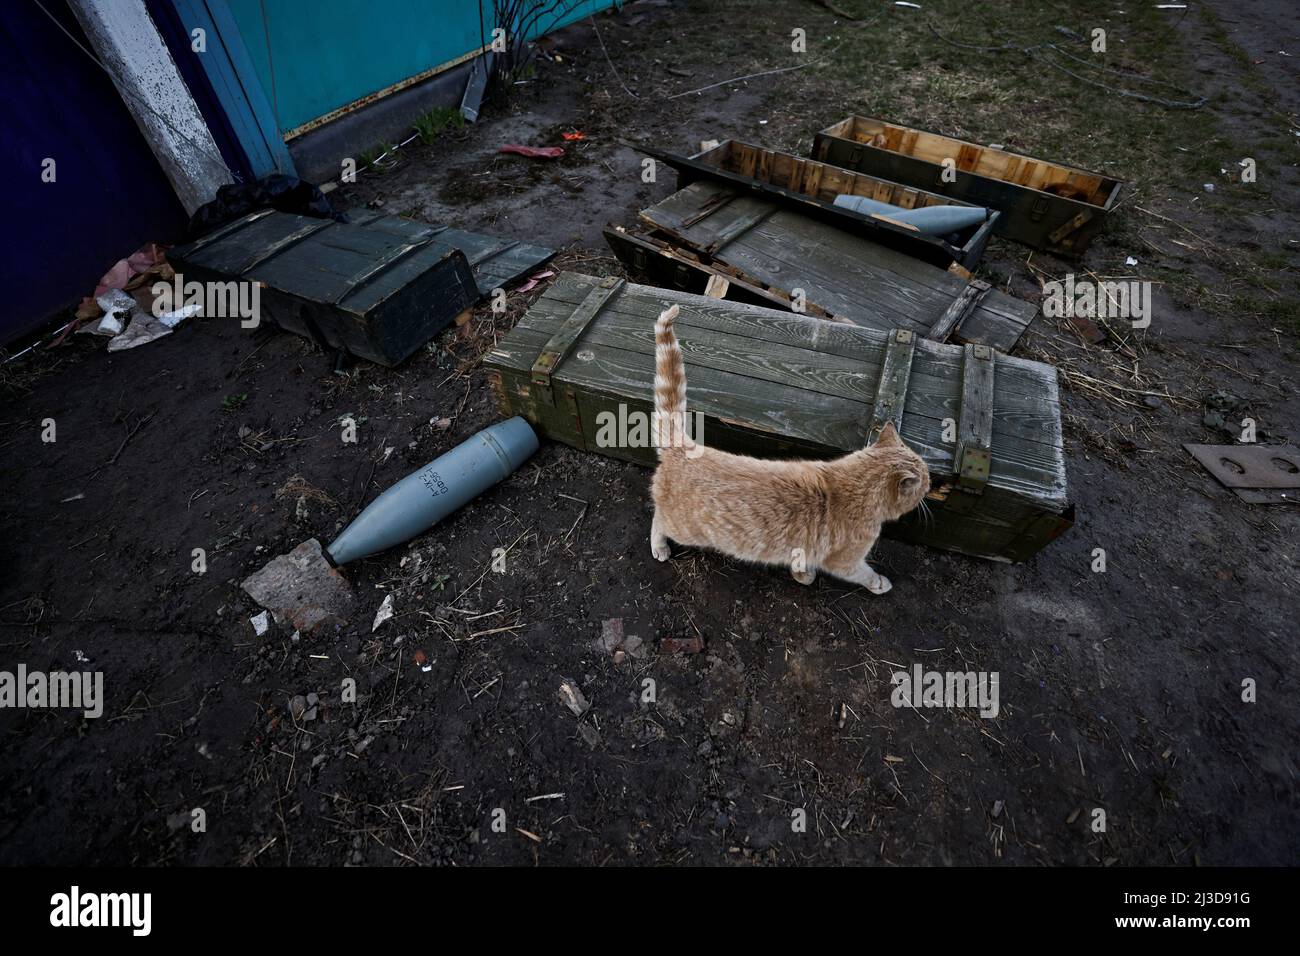 Un gatto passa attraverso le scatole che contengono proyectiles russo, in mezzo l'invasione russa dell'Ucraina in Andriivka, regione di Kyiv, Ucraina 7 aprile 2022. REUTERS/Zohra Bensetra Foto Stock